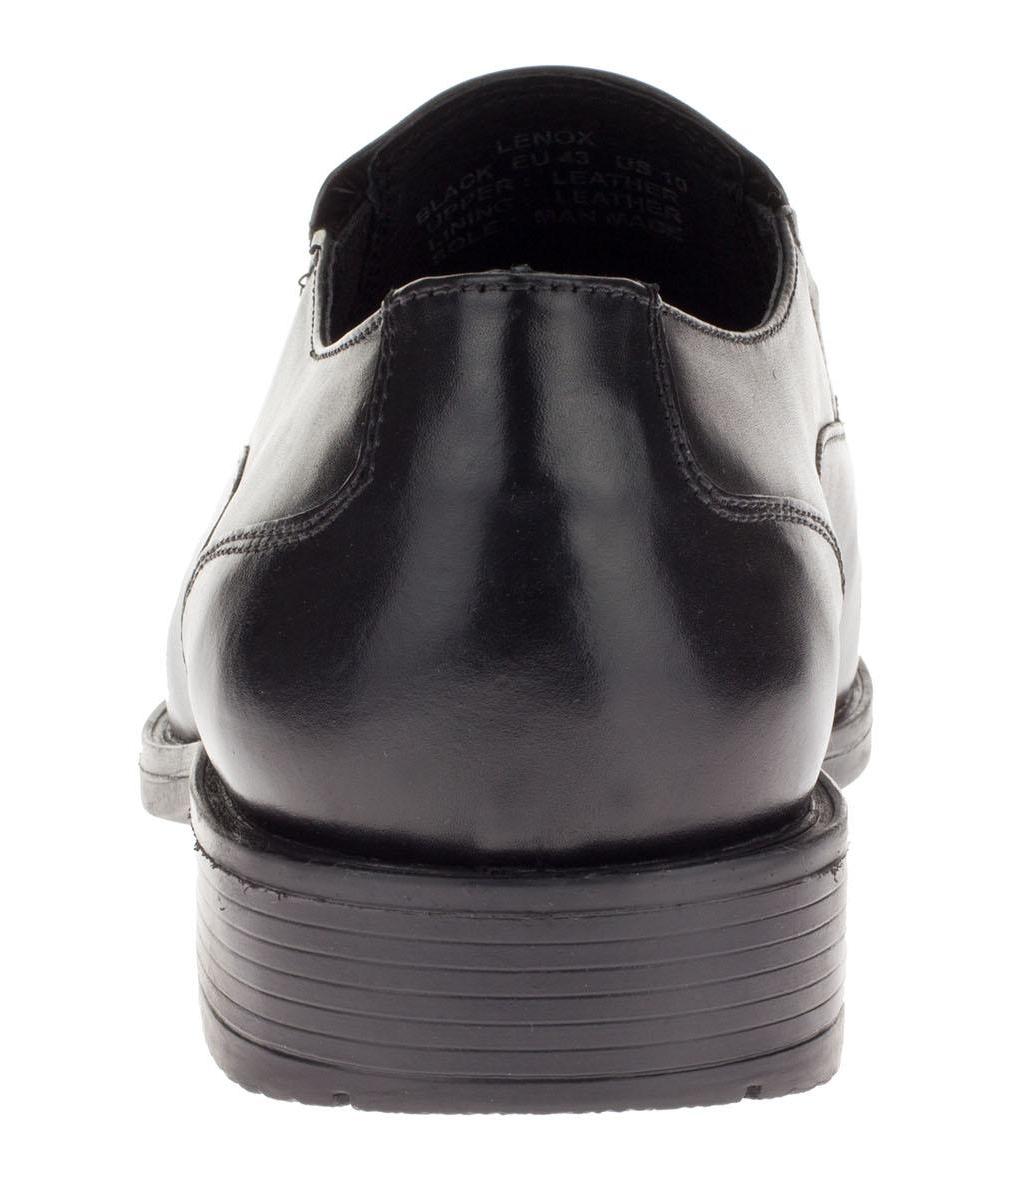 Mens Lenox Black Leather Comfort Dress Shoe DTI DARYA - image 3 of 7